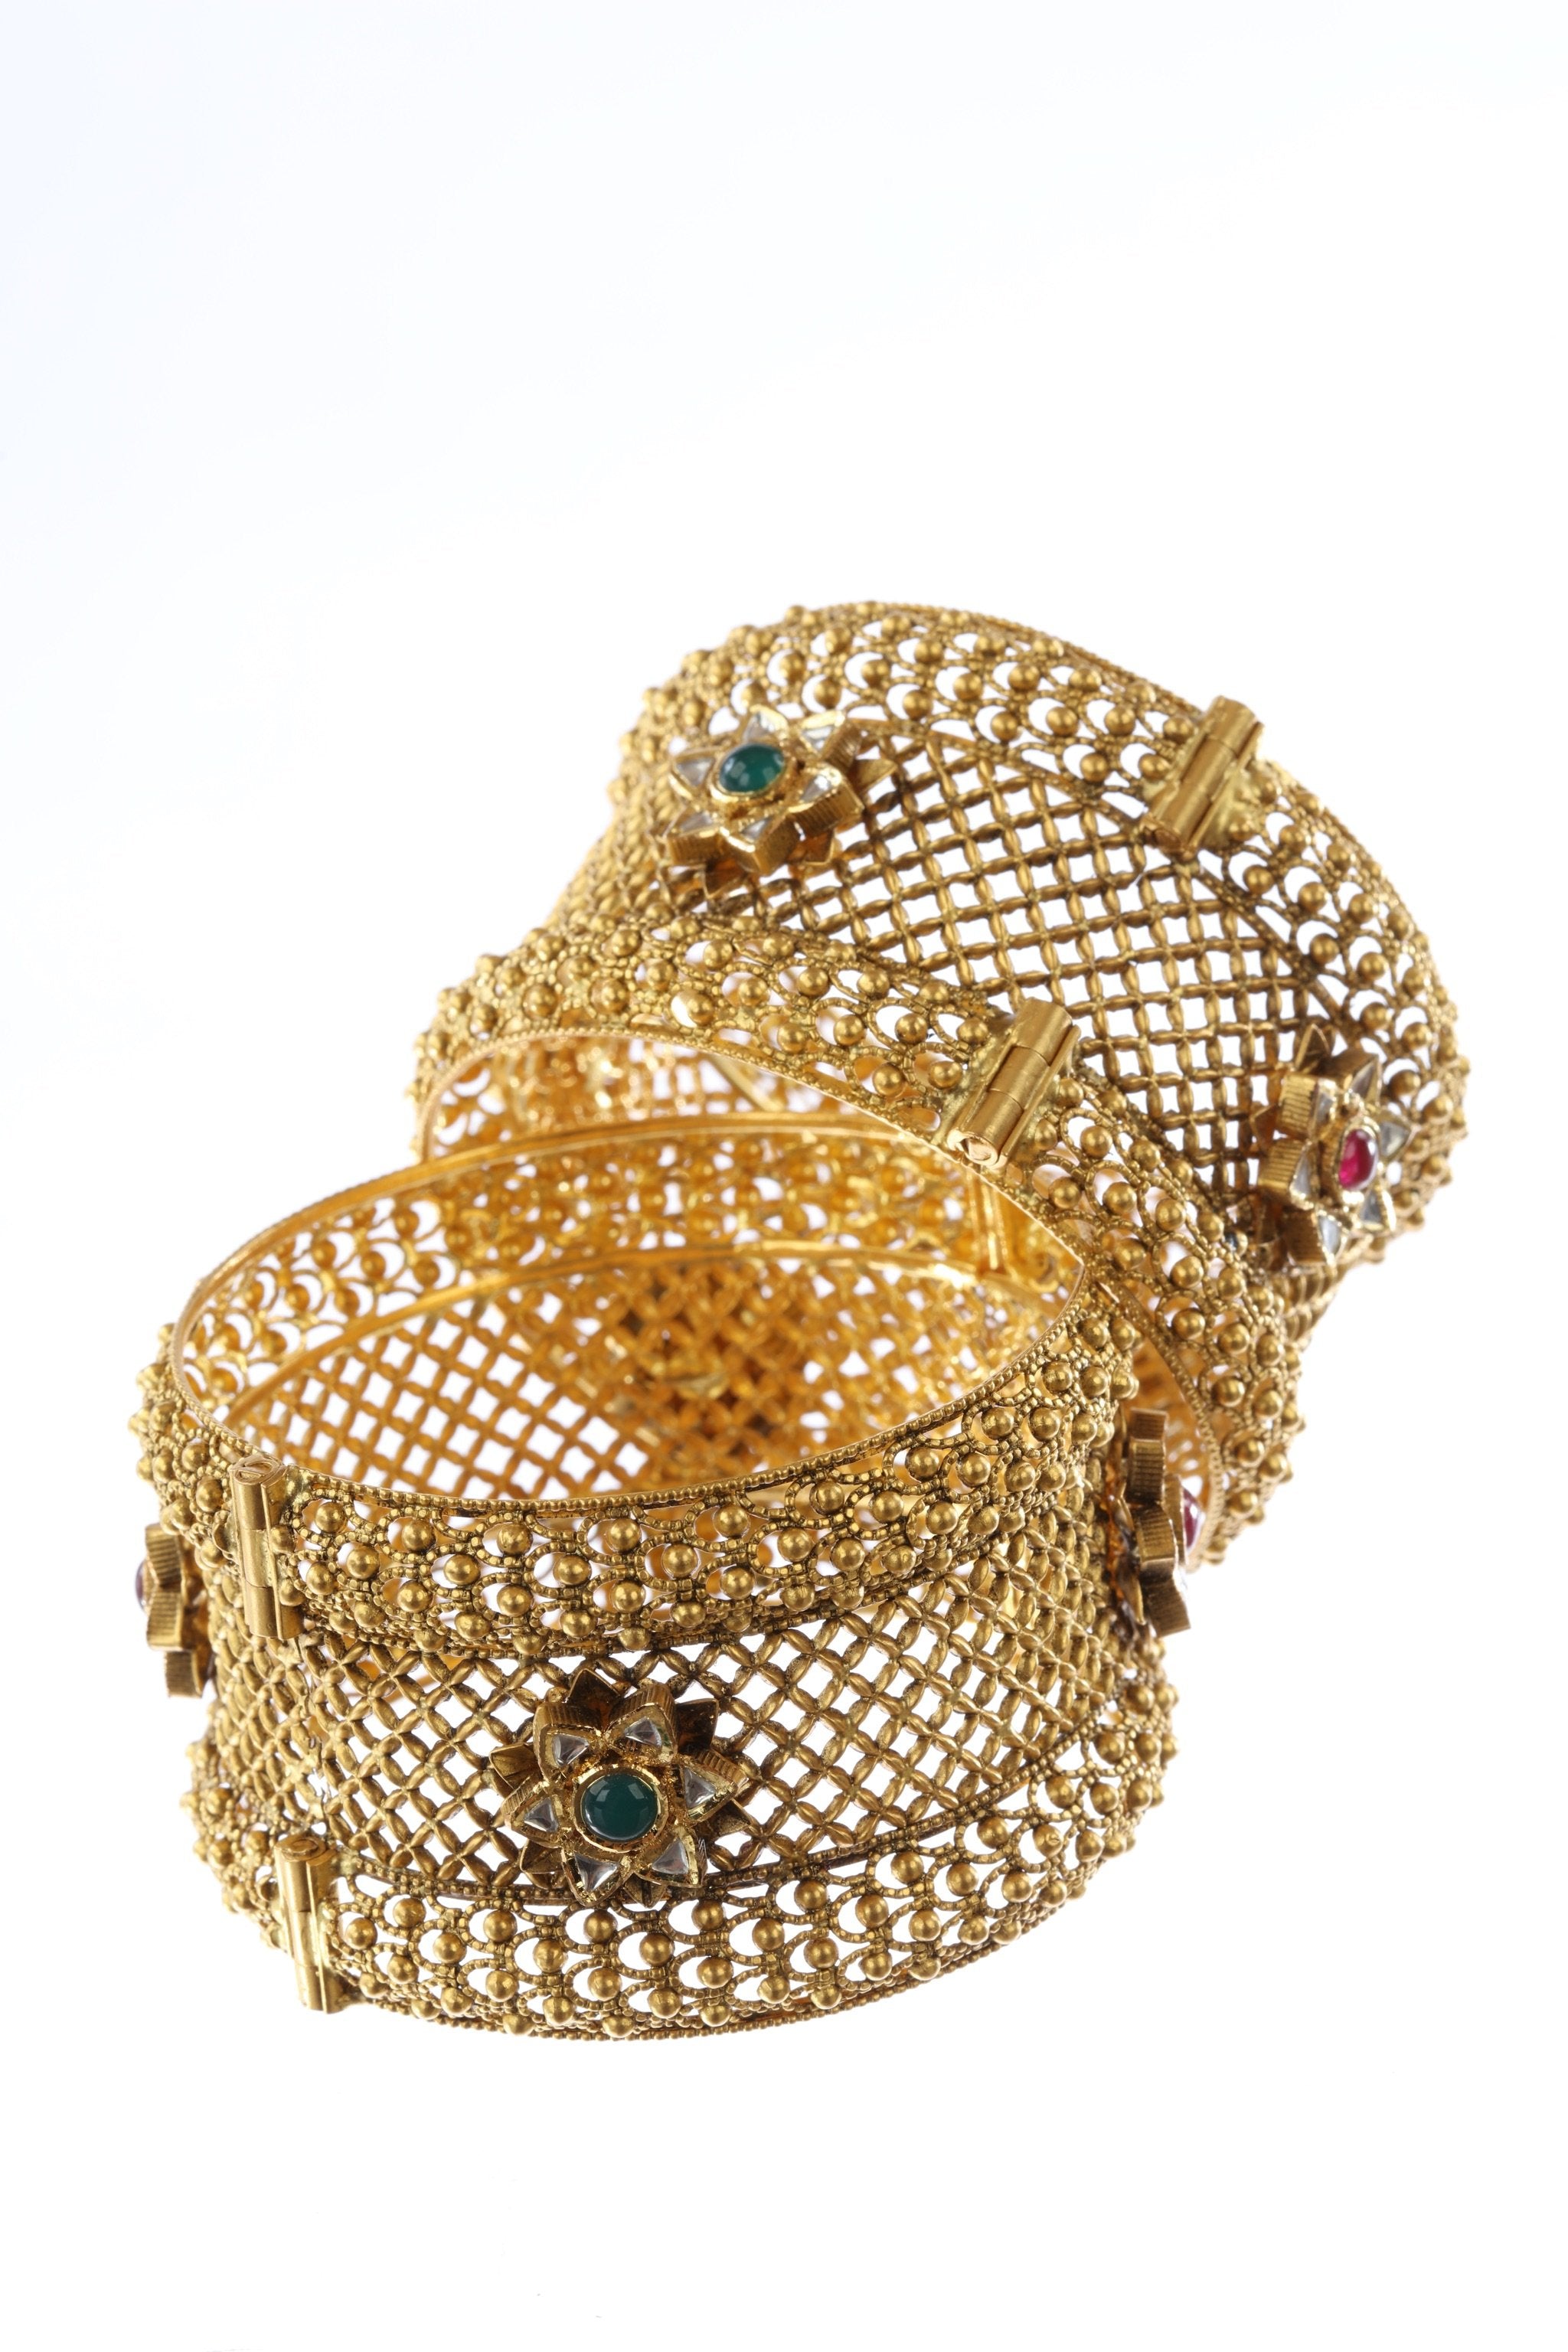 Indian Enameled Kundan Gold Plated Bridal Bangle Bracelet Bollywood Jewelry  Set | eBay